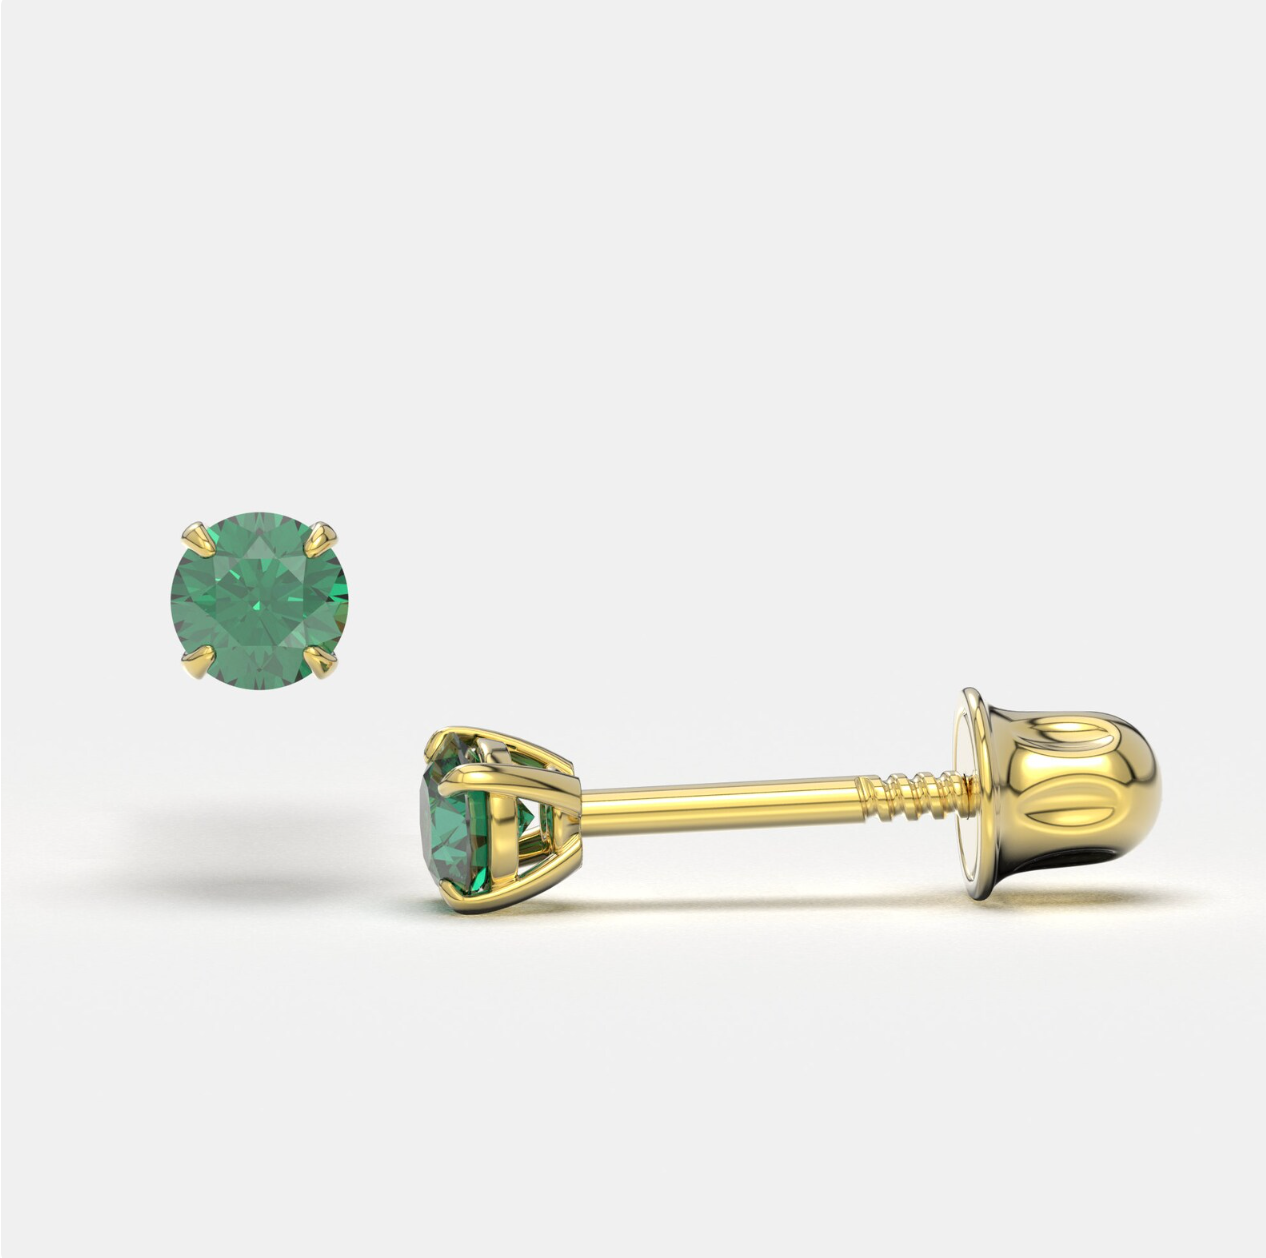 Green Zircon 14K Solid Gold Stud Earrings - BEYOND